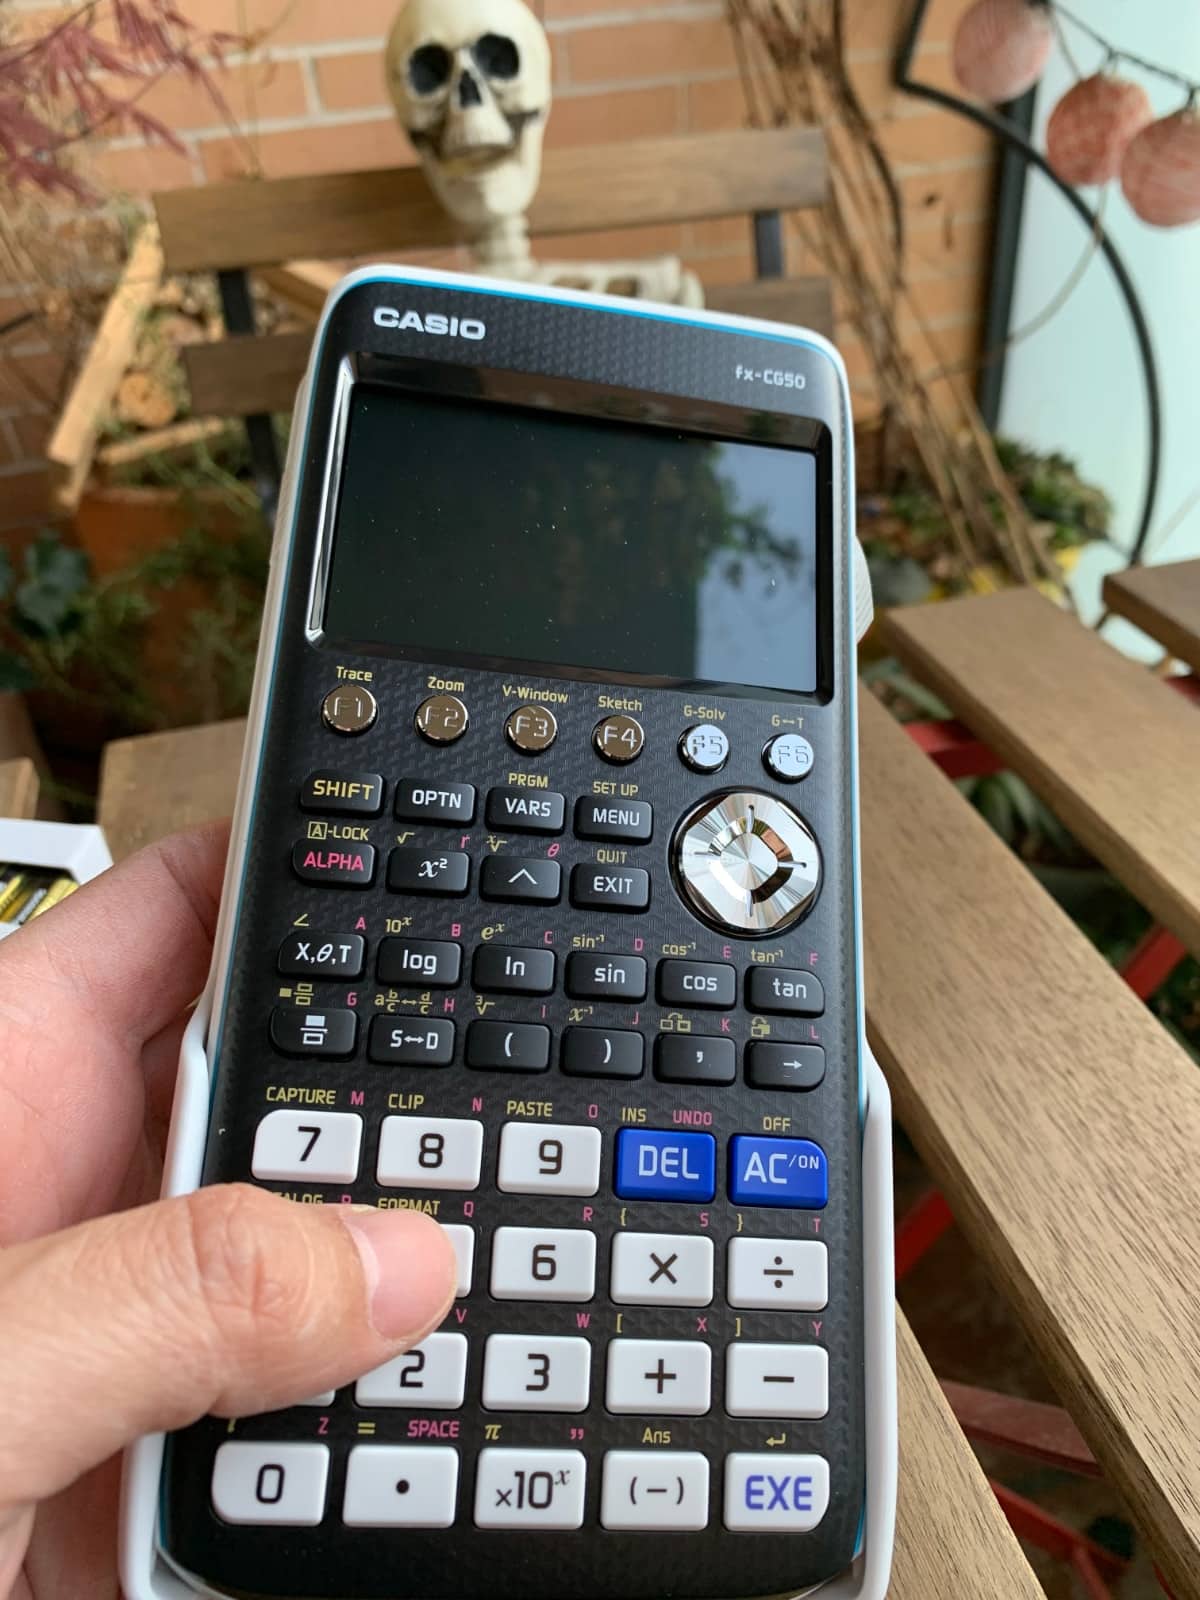 Casio FX-CG50 - Calculadora Gráfica, Pantalla a Color Alta Resolución. Una de las calculadoras más potentes dle mercado. 